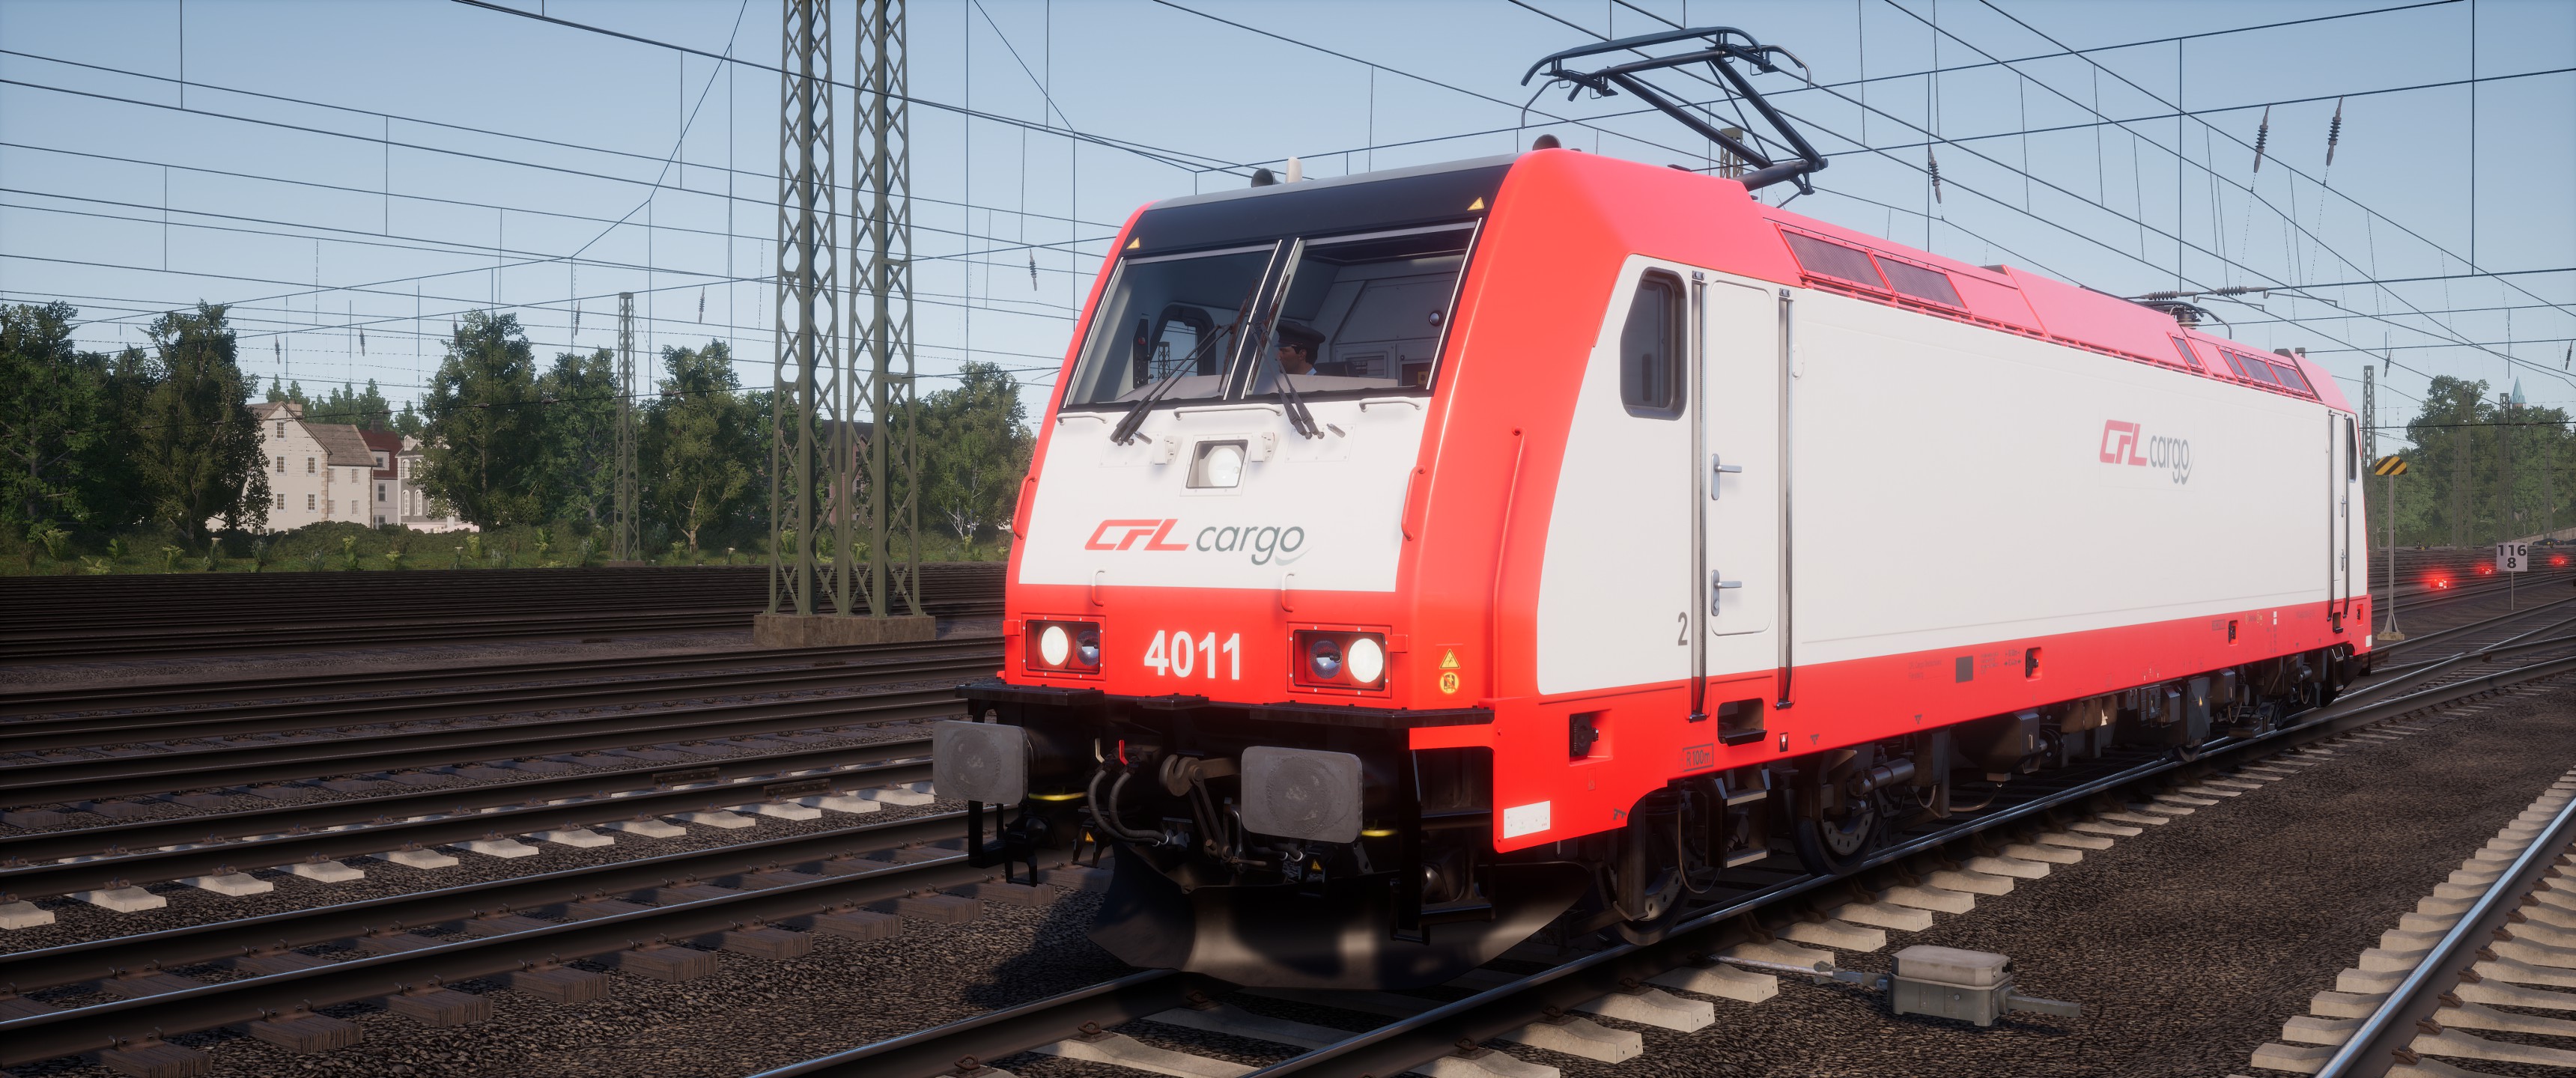 BR 185 CFL Cargo (fiktiv) RailSim.de Die deutsche